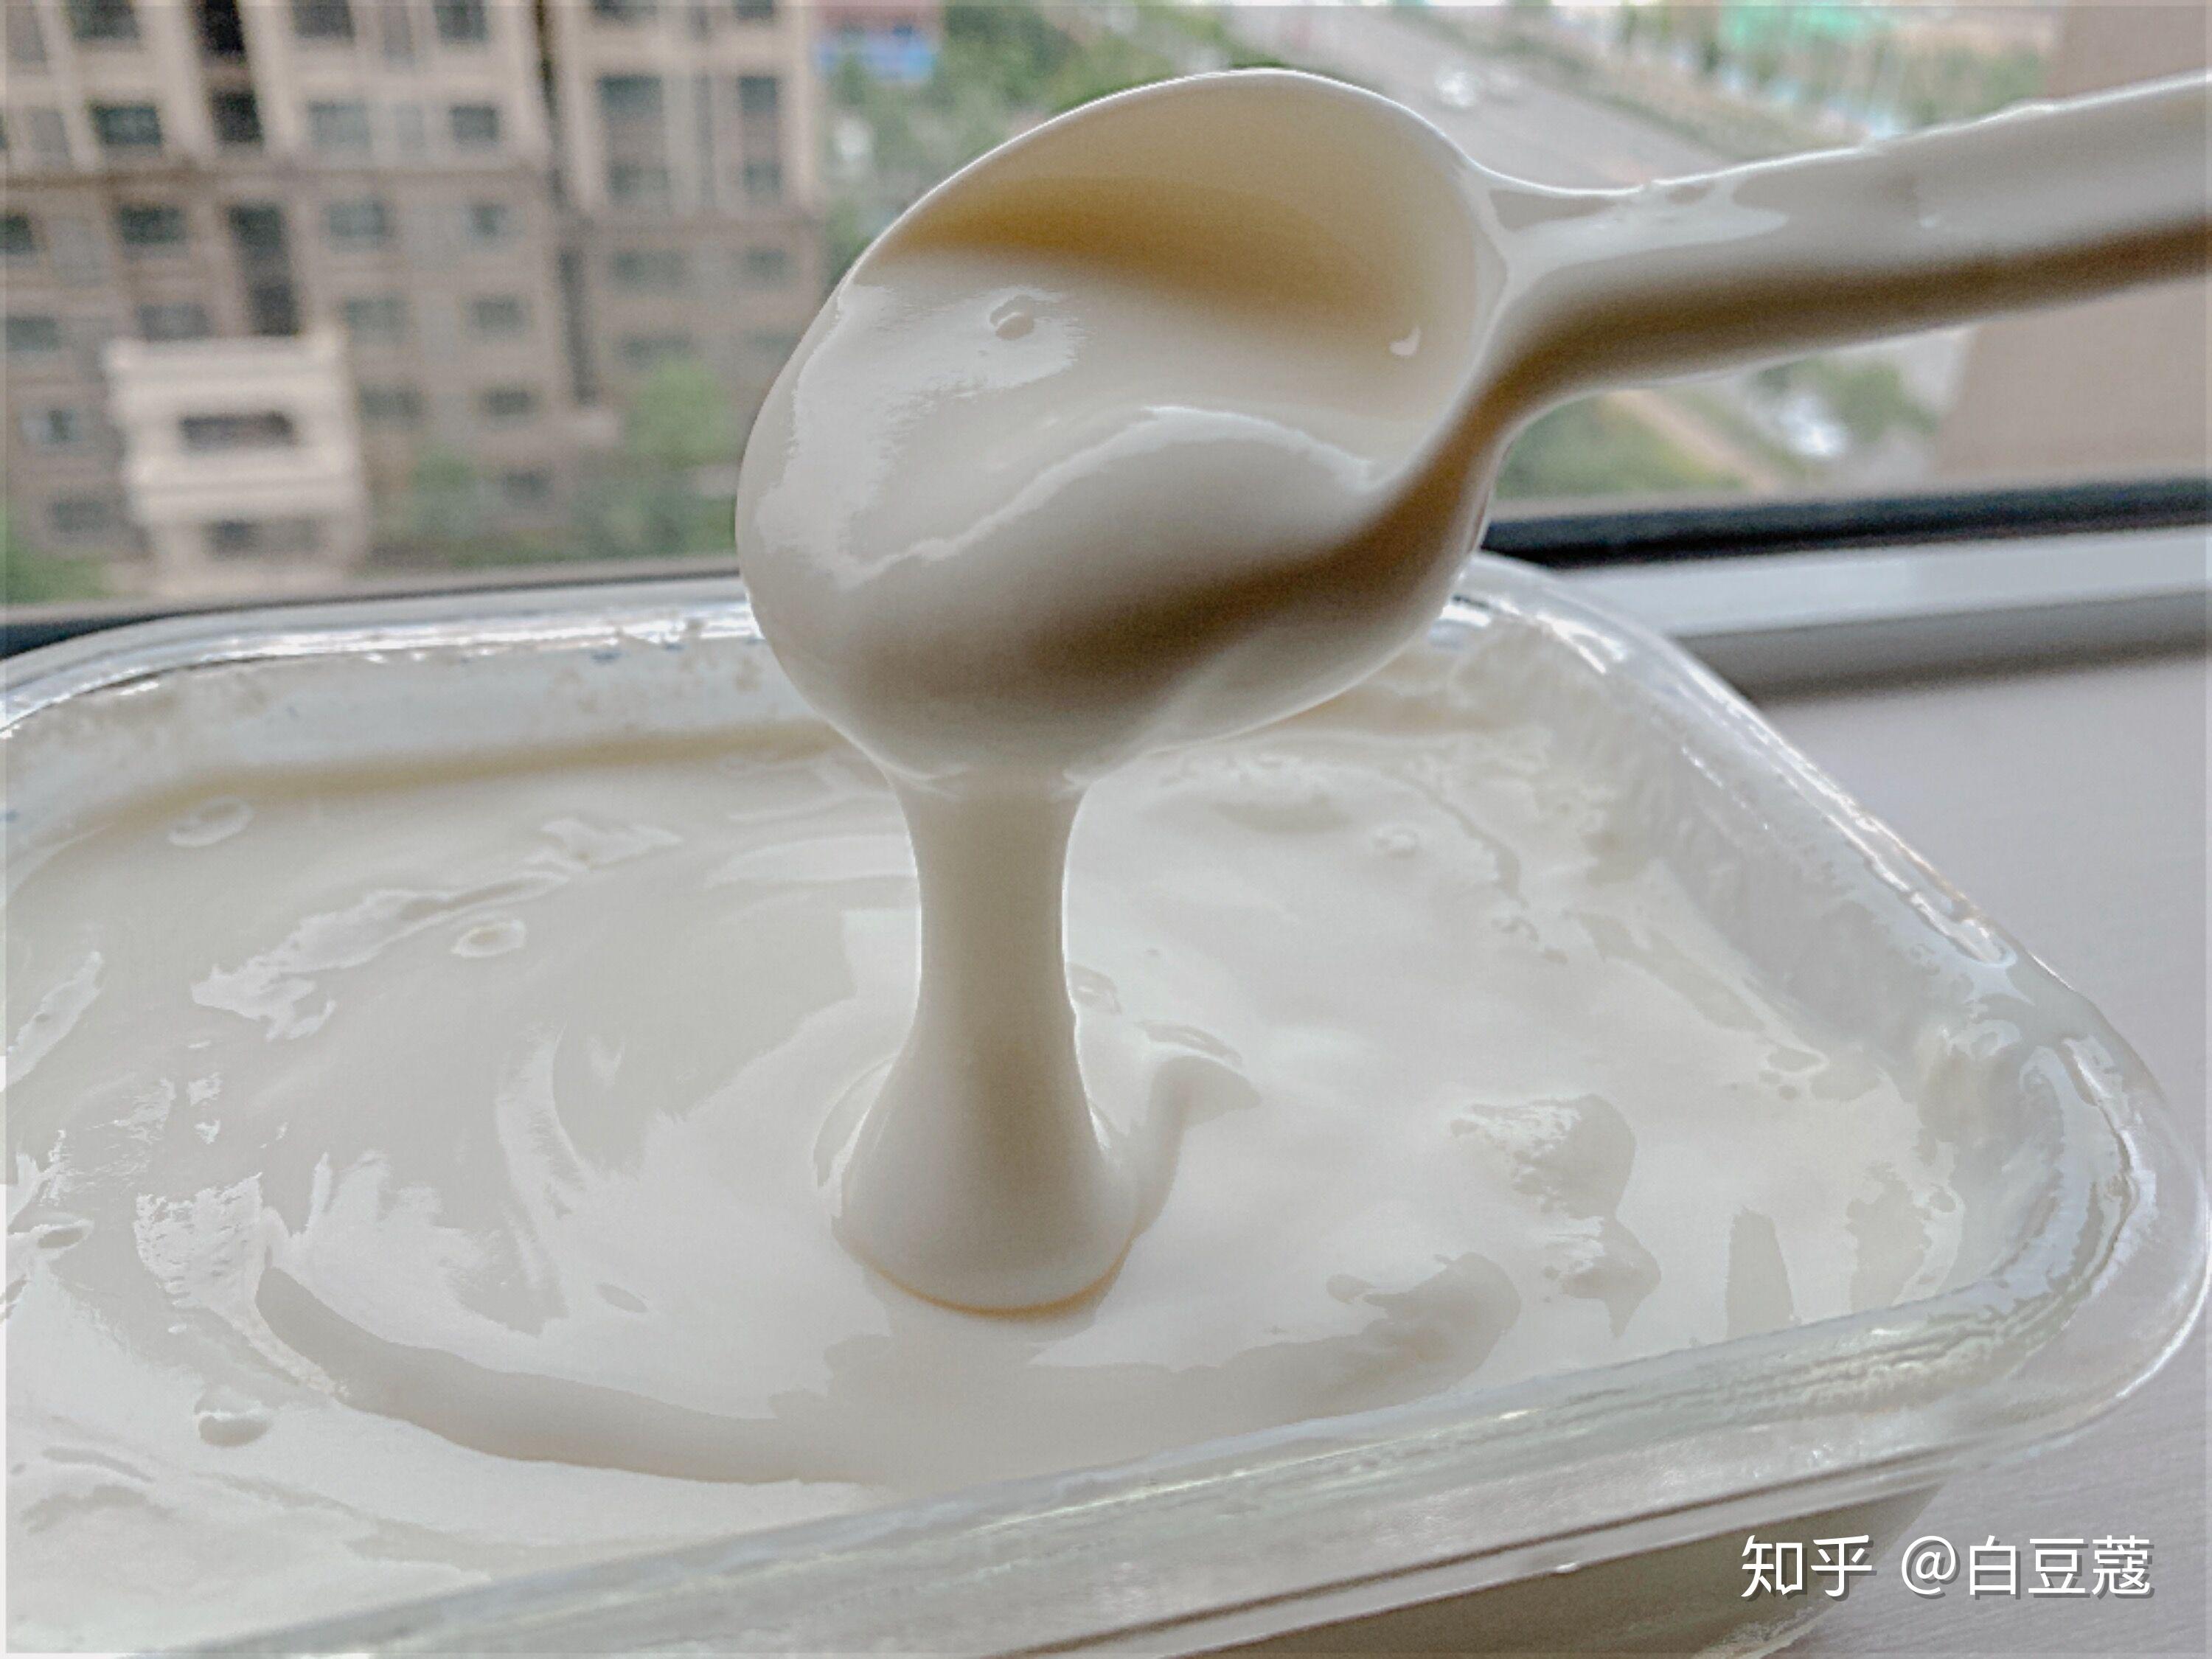 美味酸奶轻松做出来——控客智能酸奶机体验 - 太火鸟-B2B工业设计与产品创新SaaS平台